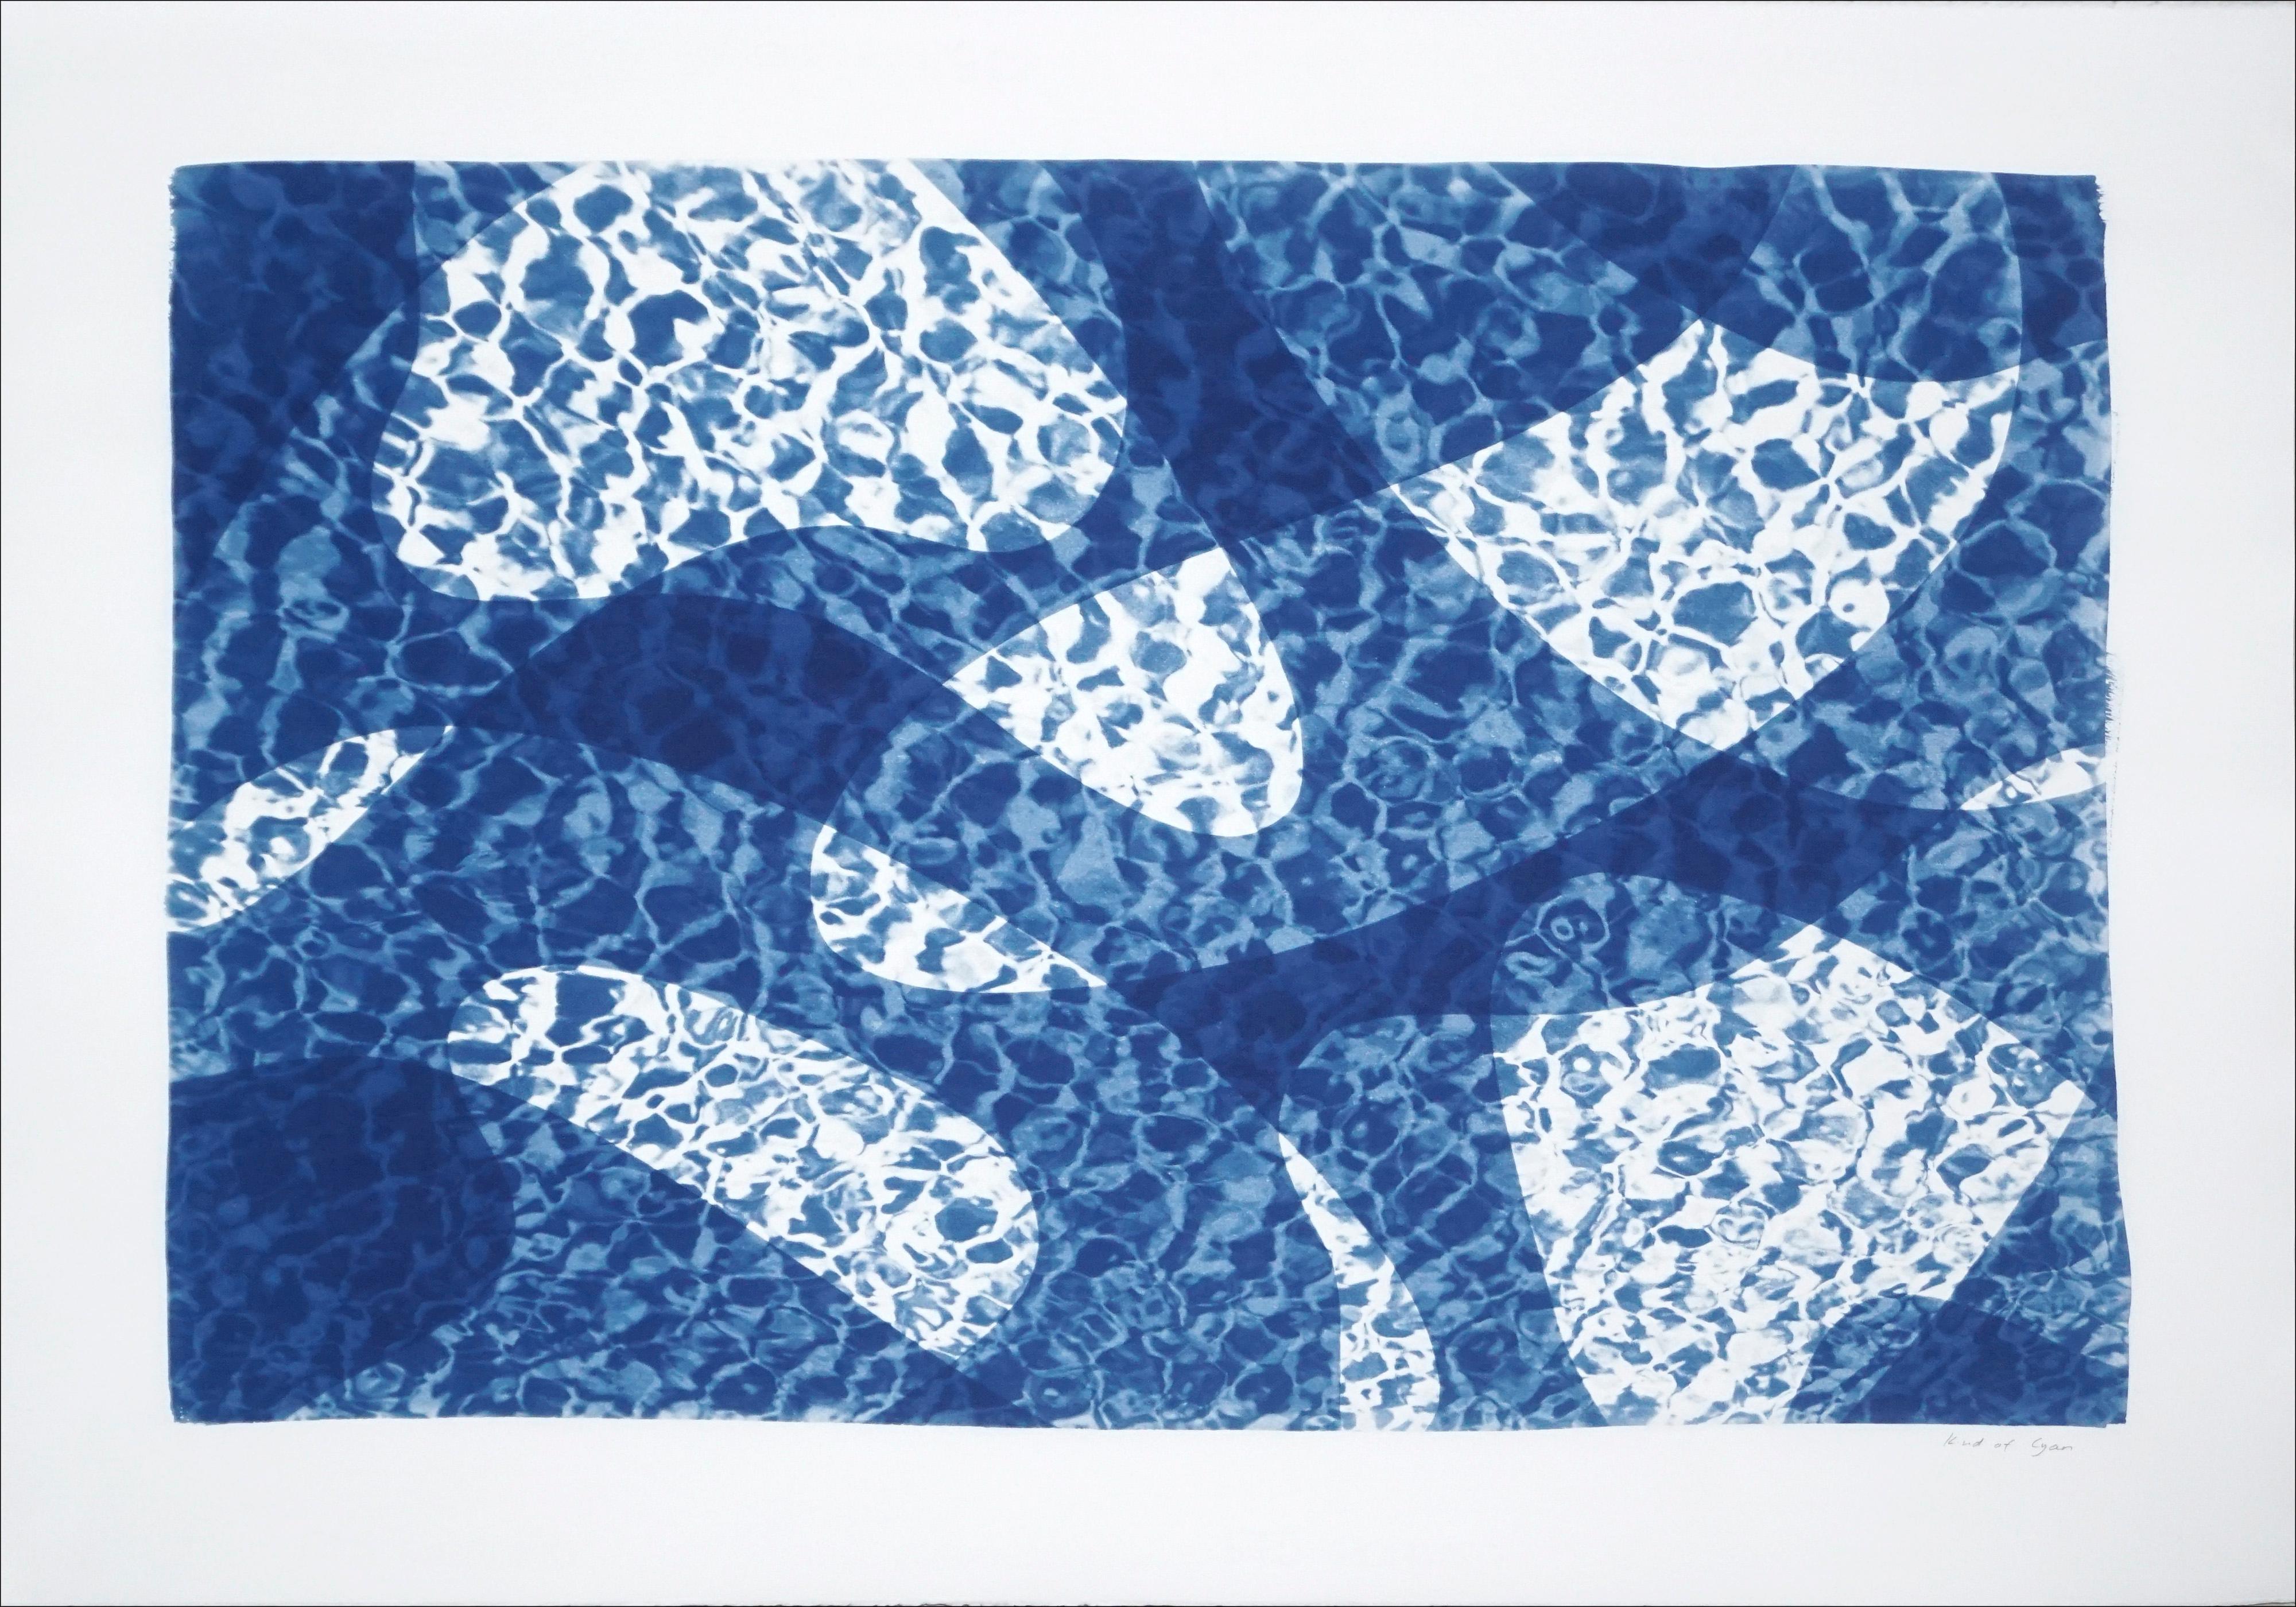 Abstract Print Kind of Cyan - Reflection de l'eau de poissons sous l'eau, monotype de cyanotype de piscine dans les tons bleus